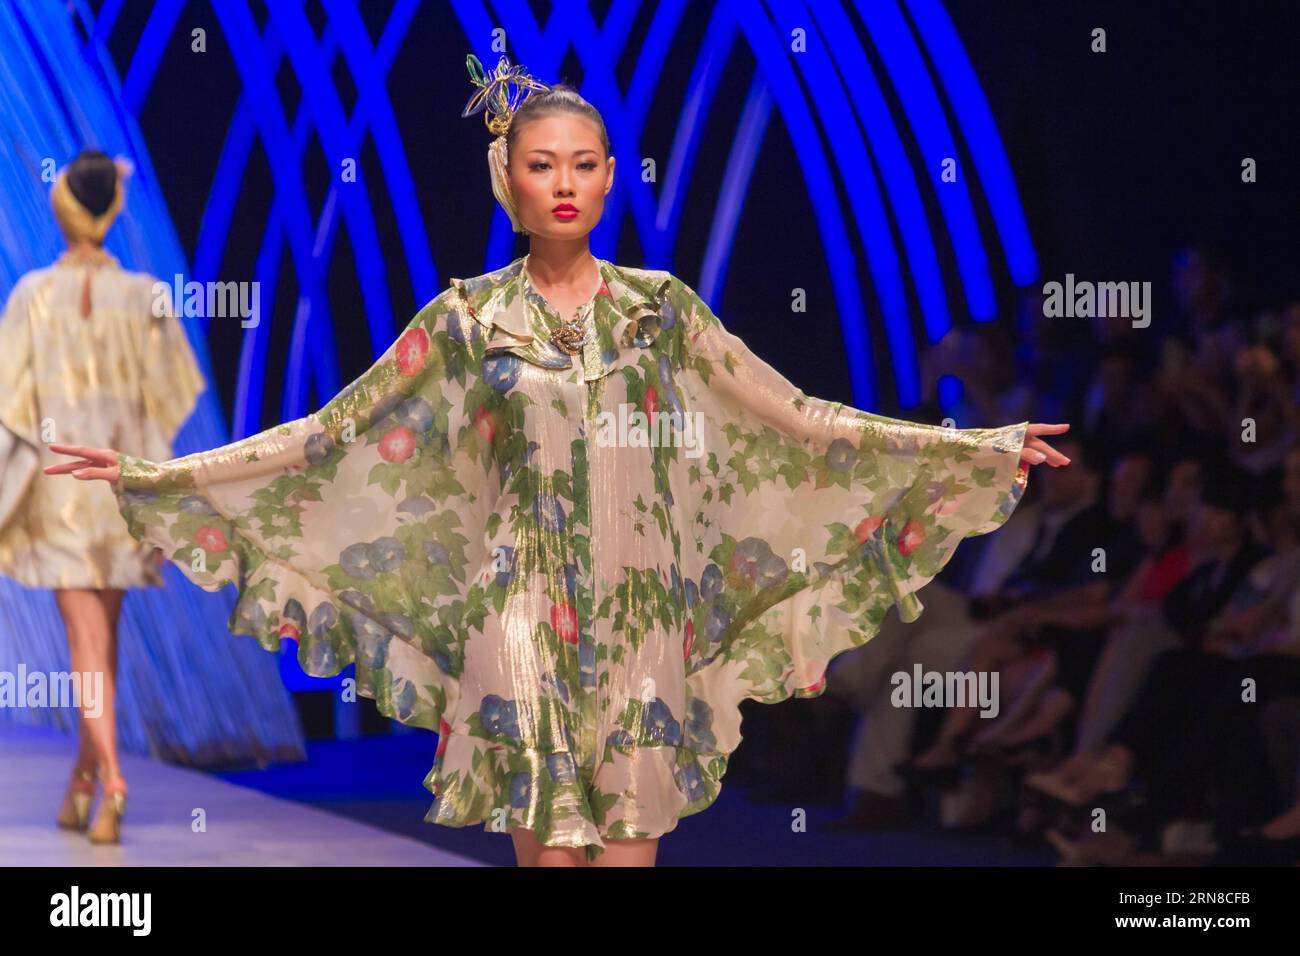 (151017) -- HO CHI MINH CITY, - Un modello presenta una creazione del designer giapponese Yumi Katsura durante la Vietnam International Fashion Week 2015 a ho chi Minh City, Vietnam, 16 ottobre 2015. Vietnam International Fashion Week 2015 si tiene a ho chi Minh città dal 14 al 18 ottobre. Come il più grande evento del suo genere nel paese finora, questo evento ha attirato noti stilisti provenienti da Francia, Italia, Australia, Giappone e Vietnam. ) VIETNAM-HO CHI MINH CITY - SETTIMANA INTERNAZIONALE DELLA MODA NguyenxLexHuyen PUBLICATIONxNOTxINxCHN ho chi Minh City a Model presenta una creazione di designer giapponesi Foto Stock